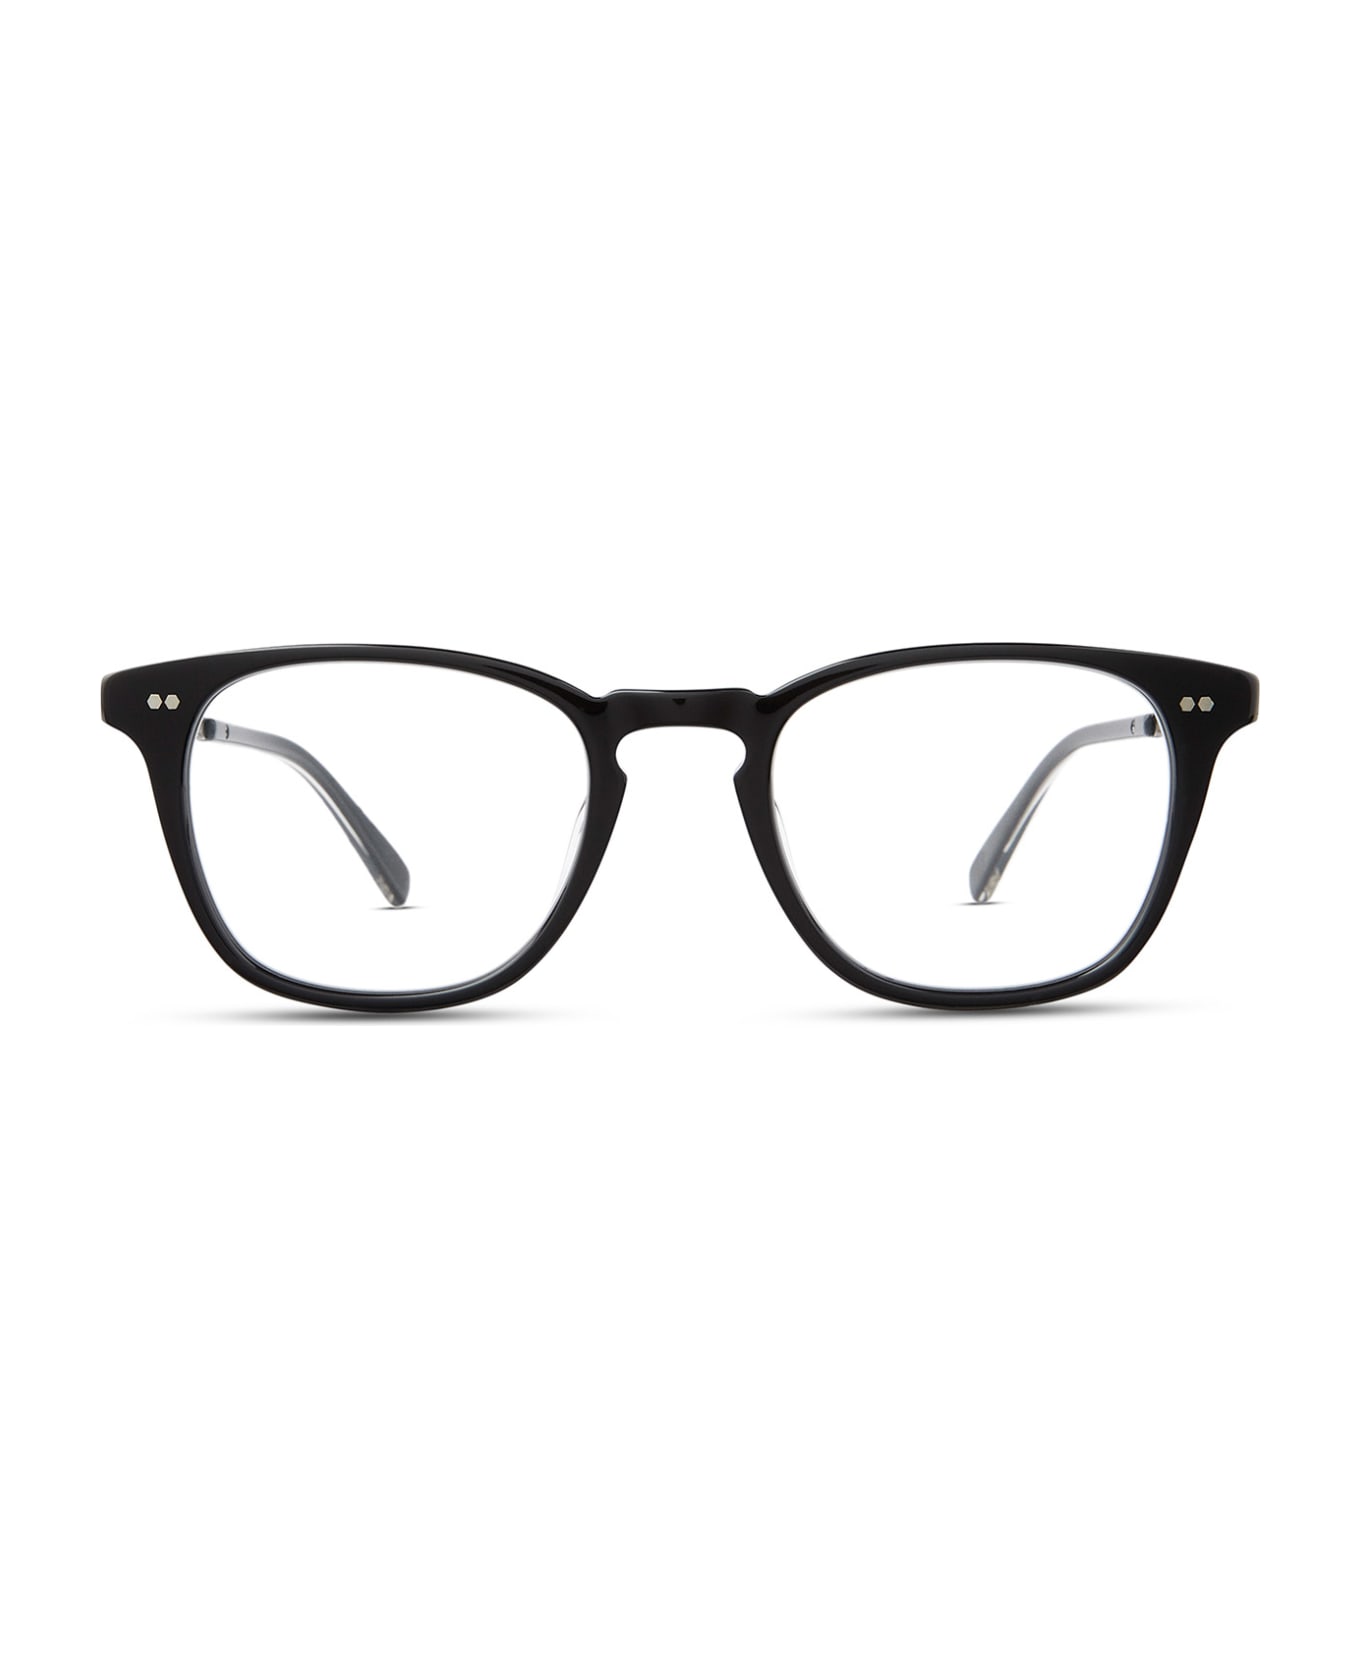 Mr. Leight Kanaloa C Black-gunmetal Glasses - Black-Gunmetal アイウェア